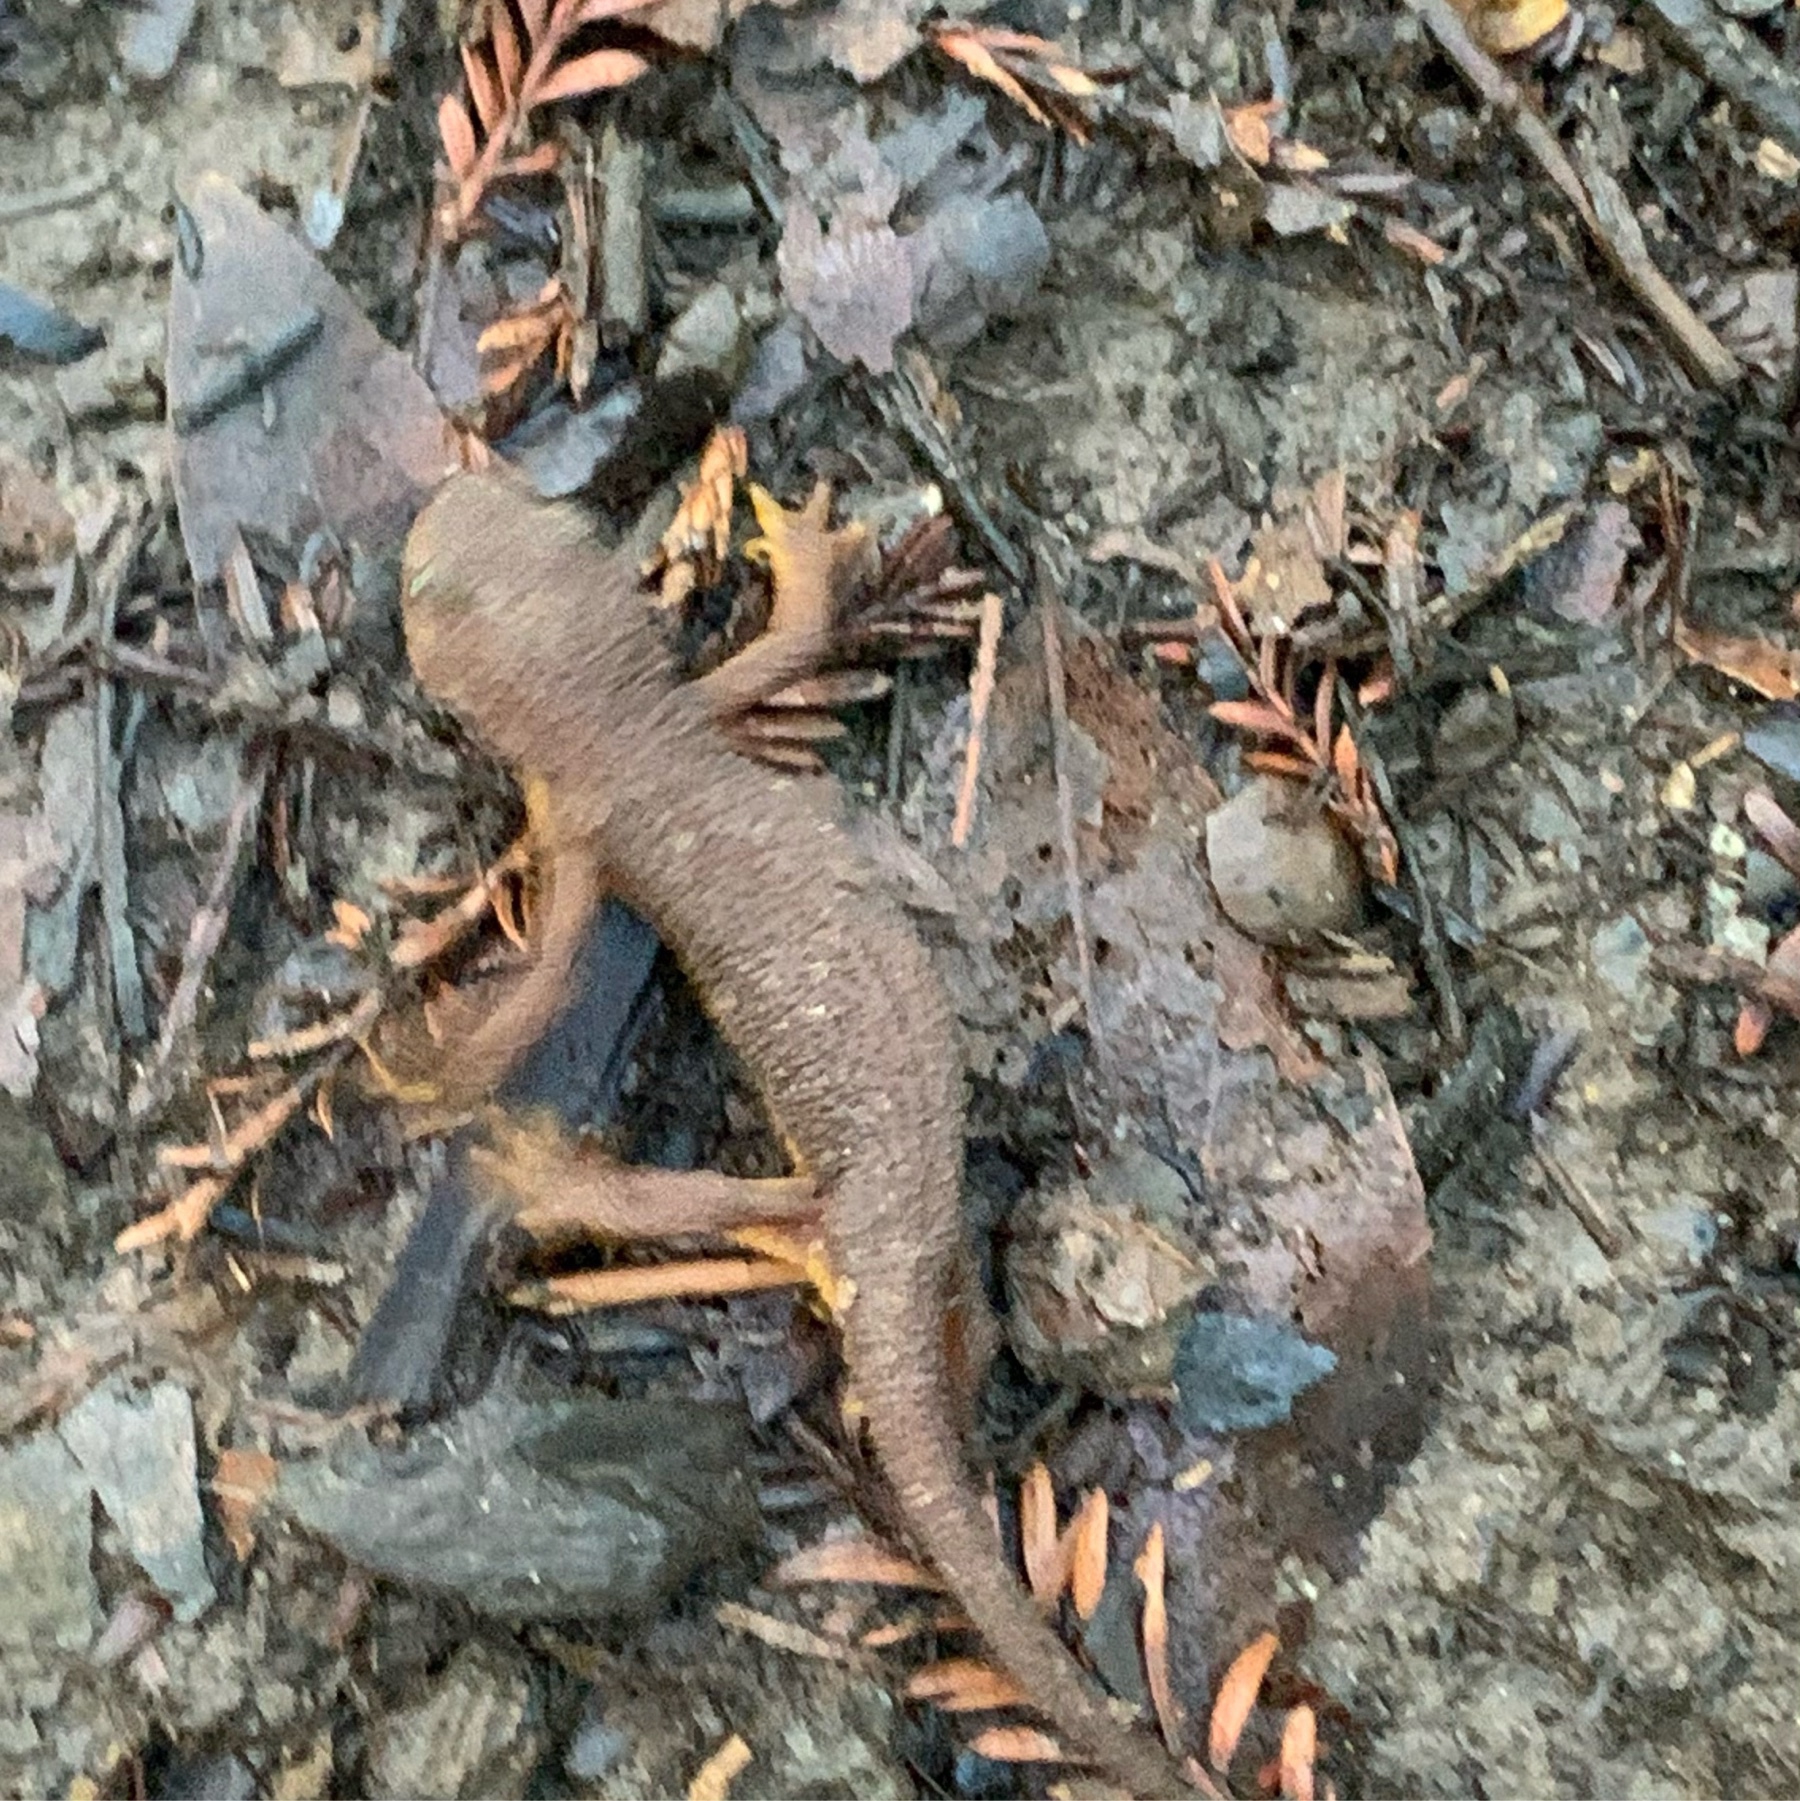 newt and ground